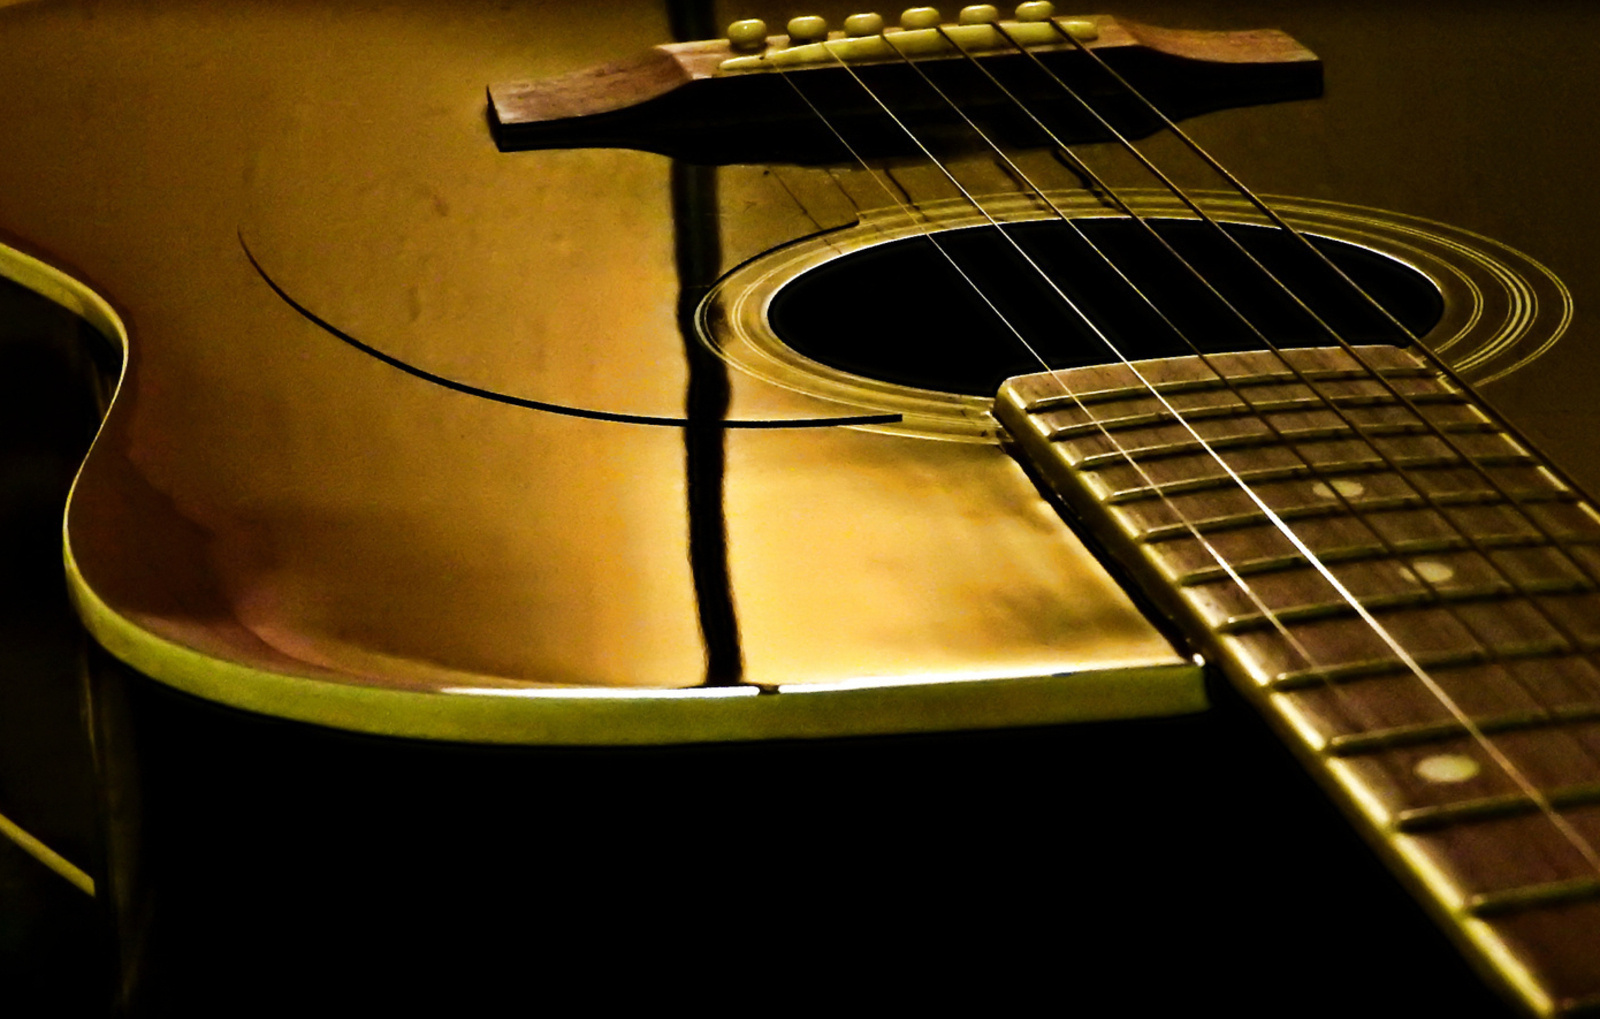 Fekete gitár a szoba fényében arannyá vált